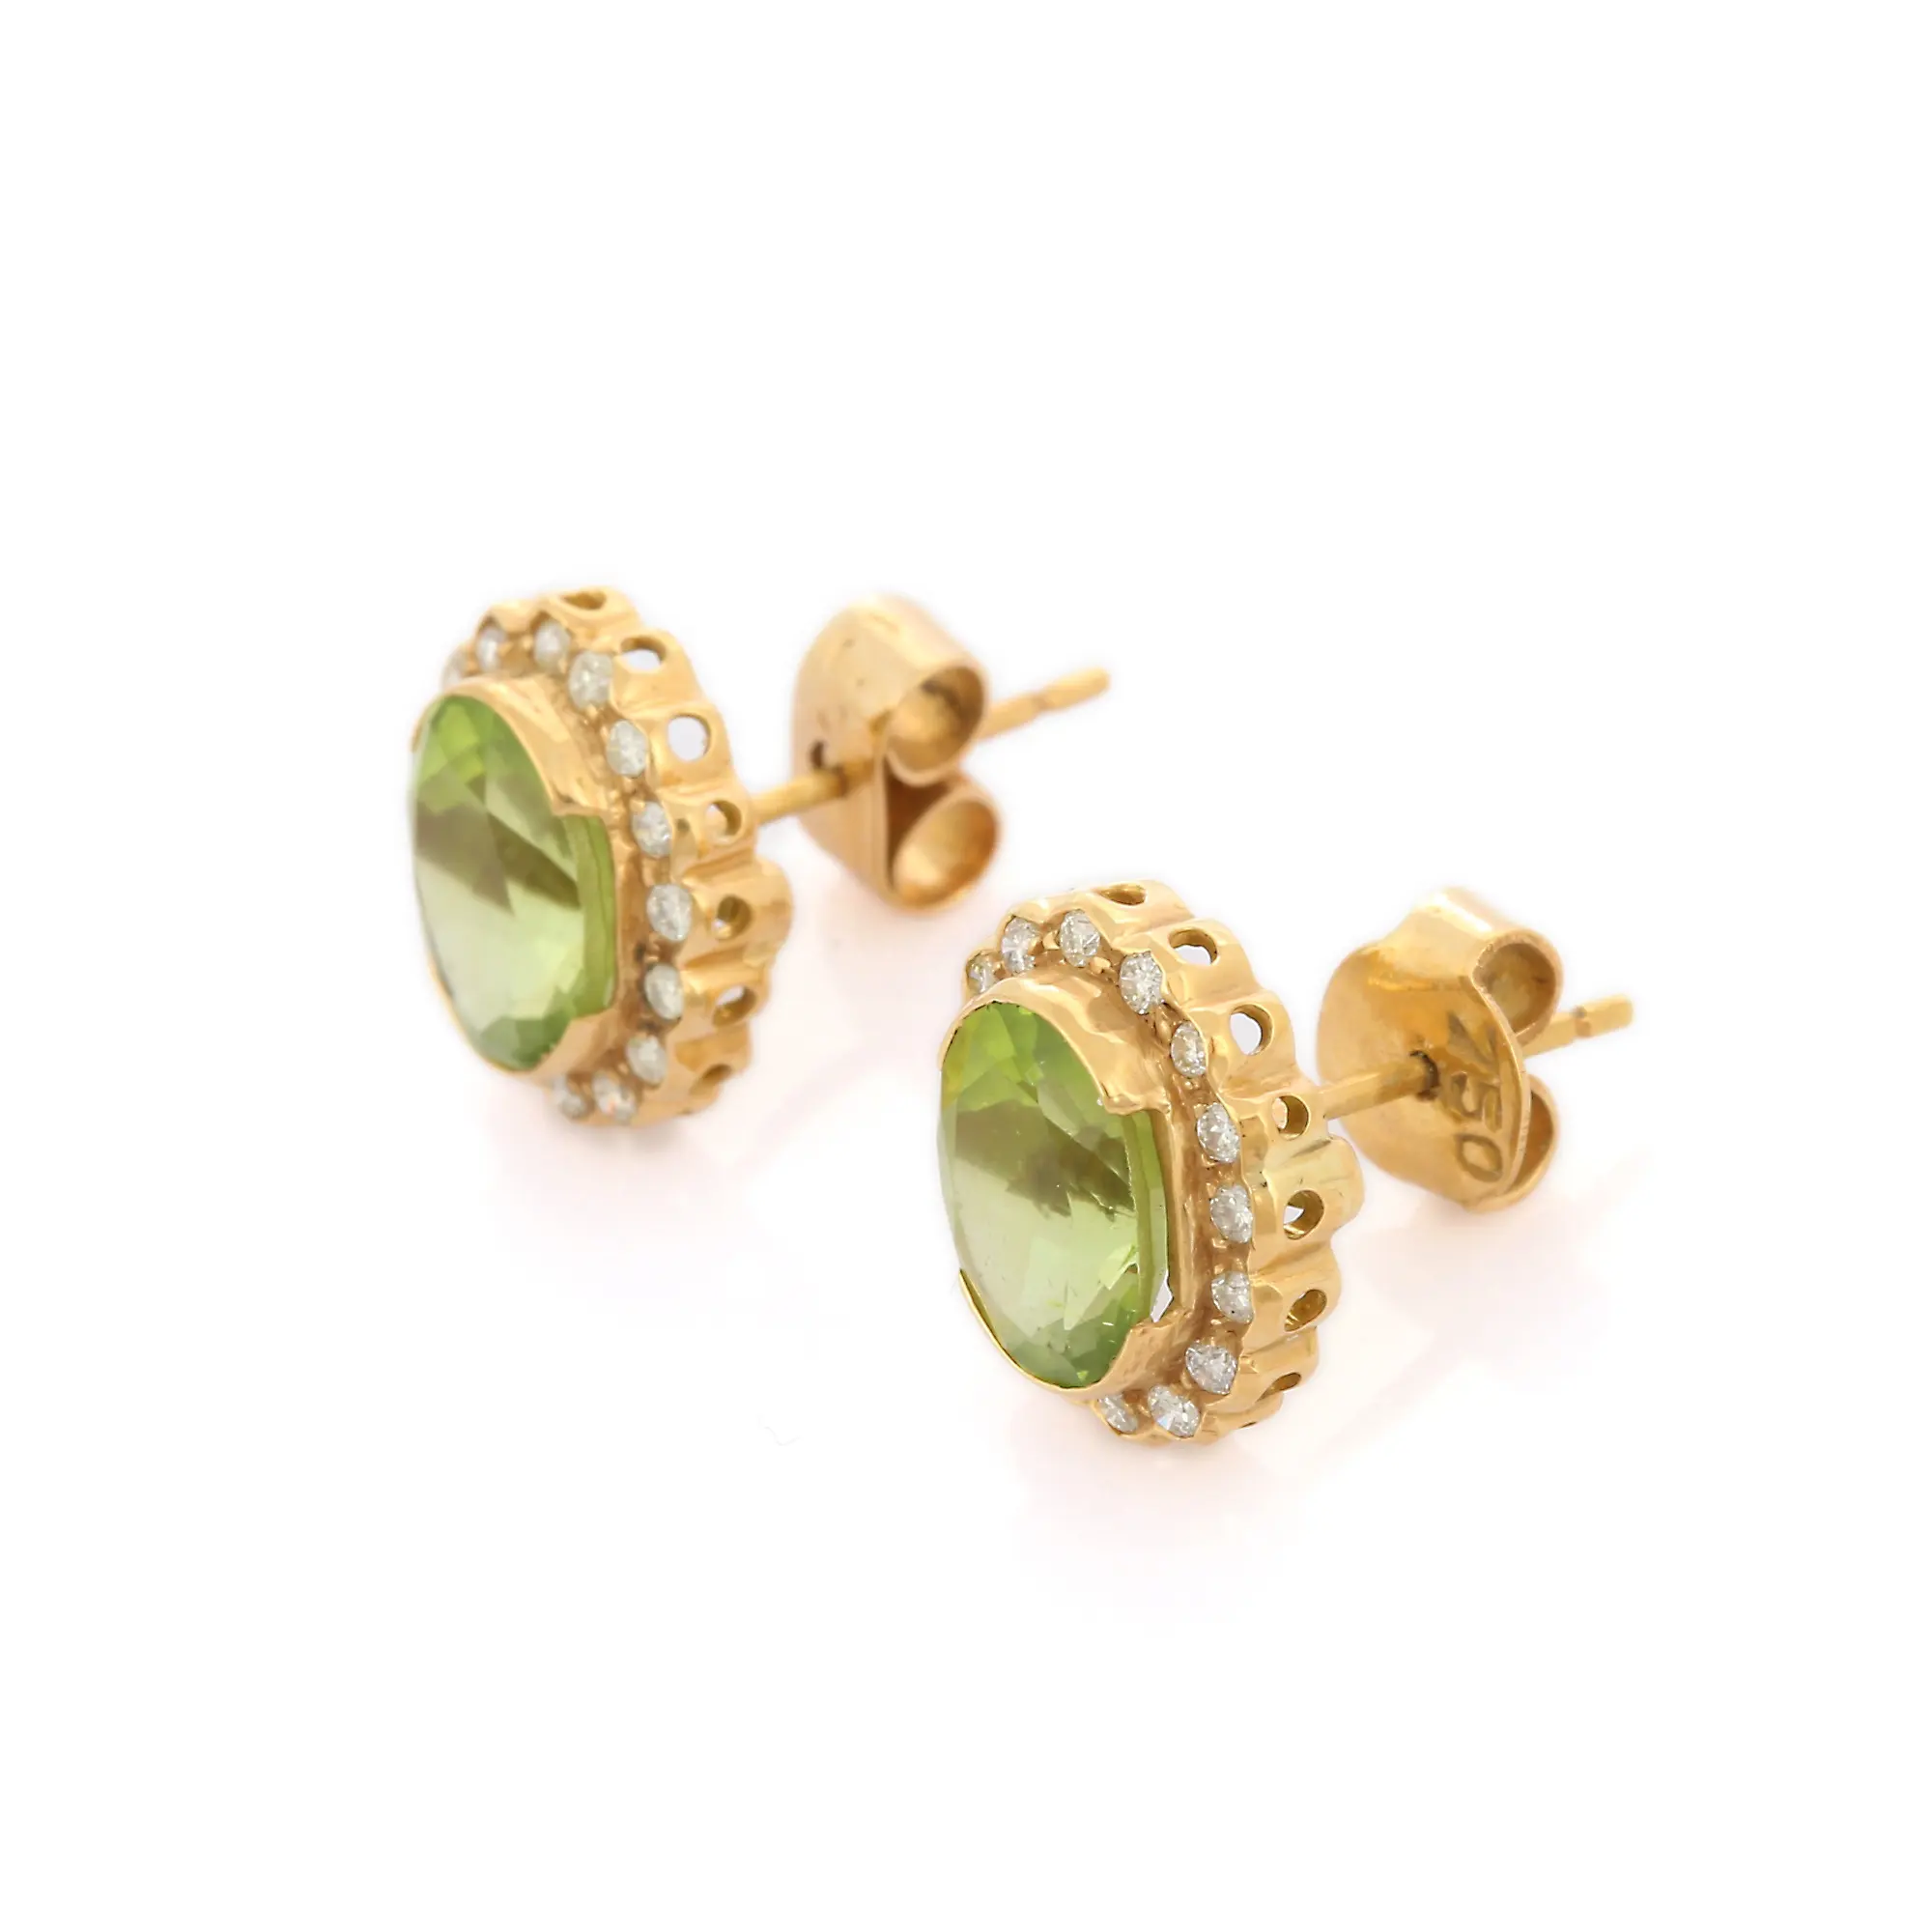 Commandez ces belles boucles d'oreilles faites à la main 100% péridot naturel et diamant 18 carats en or jaune massif Designer Fine Jewelry